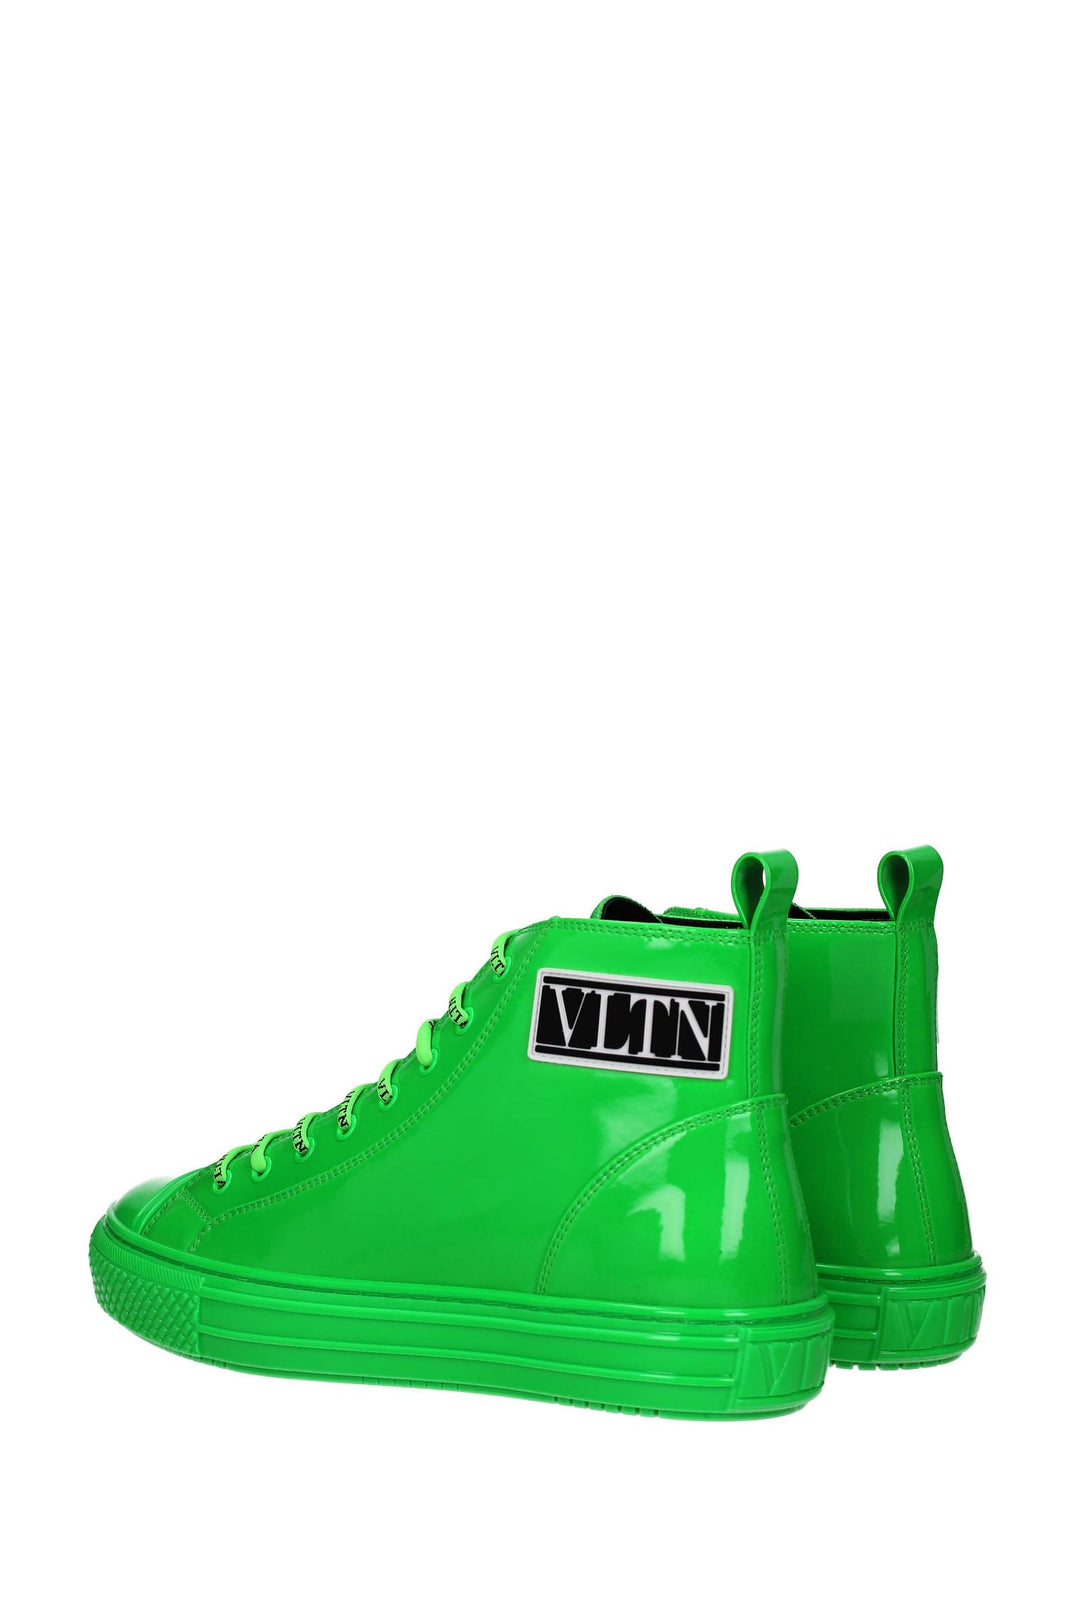 Sneakers Vltn Vernice Verde Verde Fluo - Valentino Garavani - Uomo